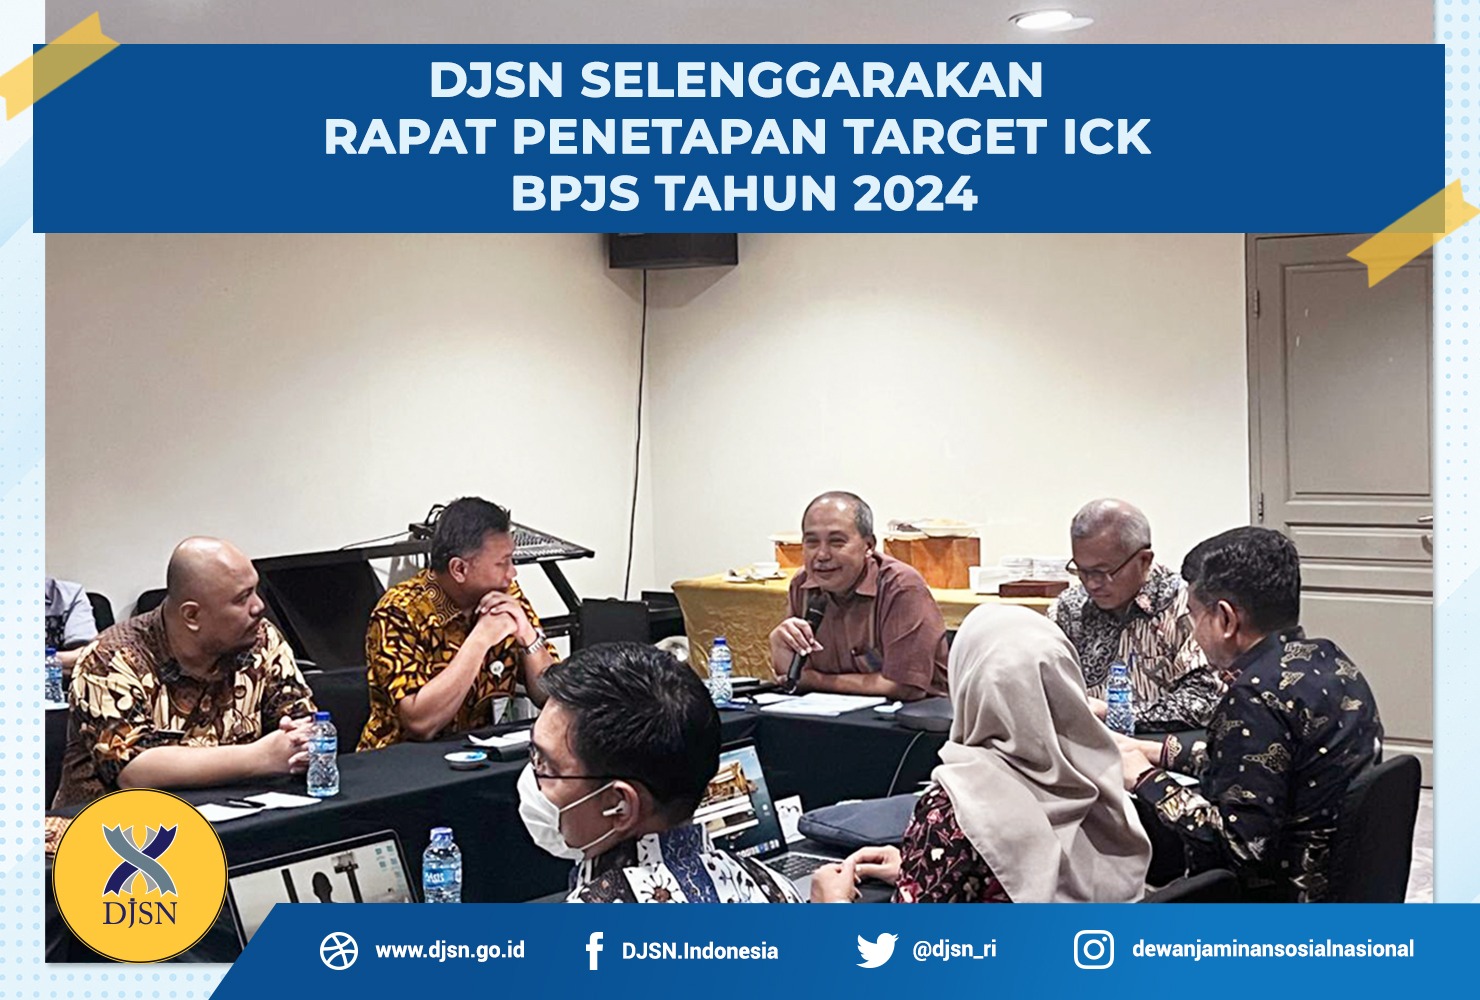 DJSN Selenggarakan Rapat Penetapan Target ICK BPJS Tahun 2024